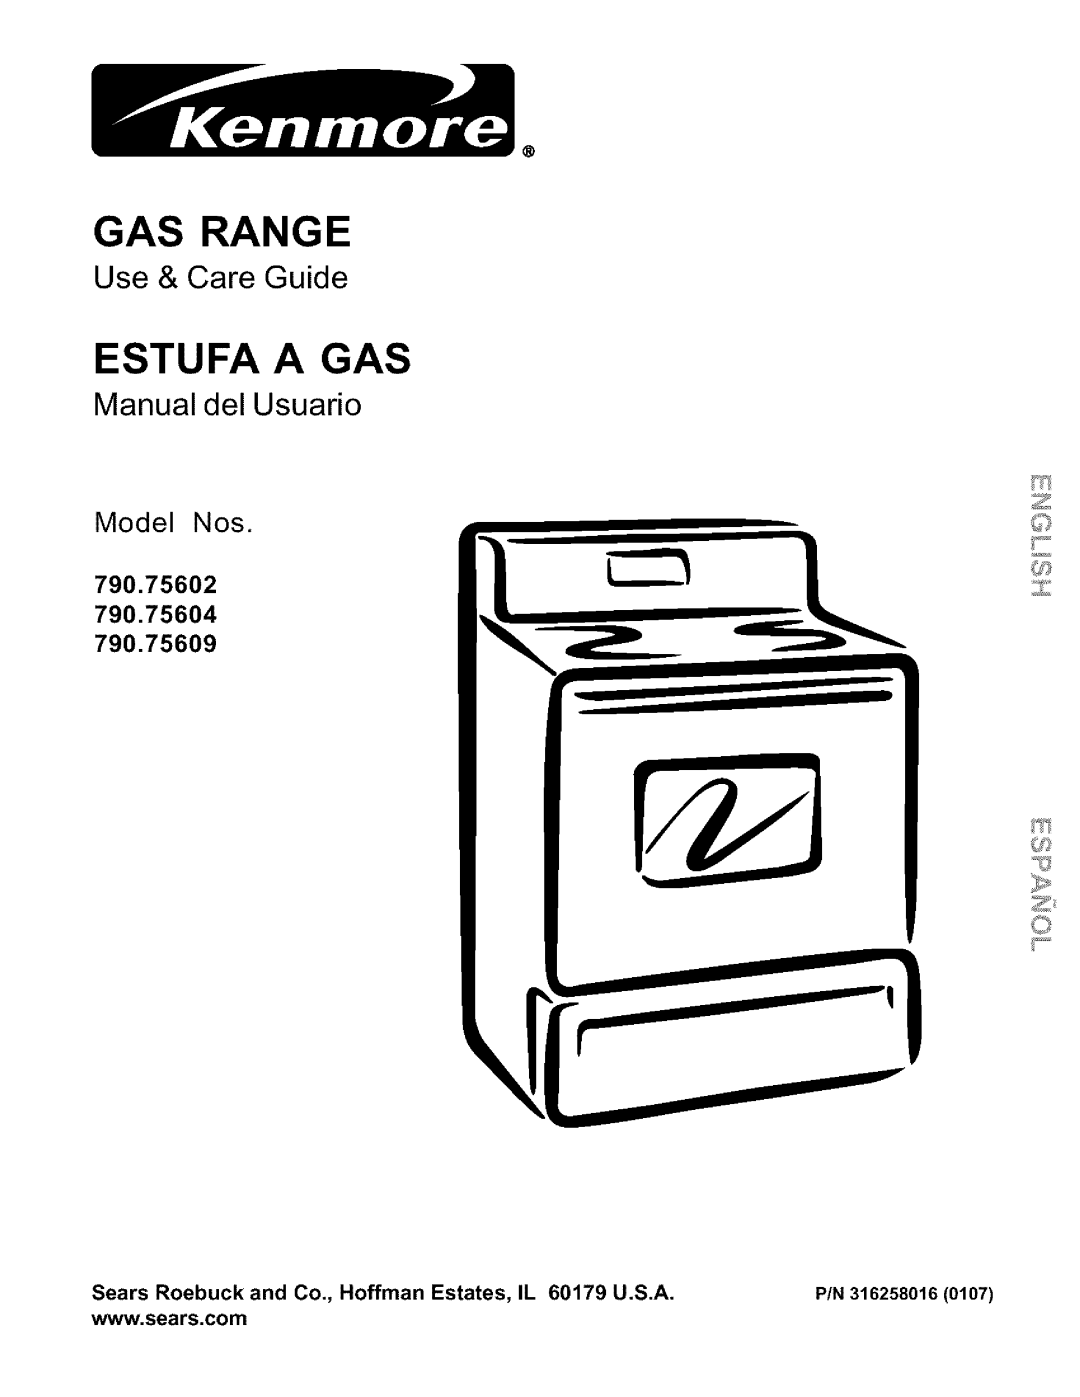 Kenmore 790.75609 manual Gas Range, Estufa A Gas, Use & Care Guide, Manual del Usuado, Model Nos, 790.75602, P/N 